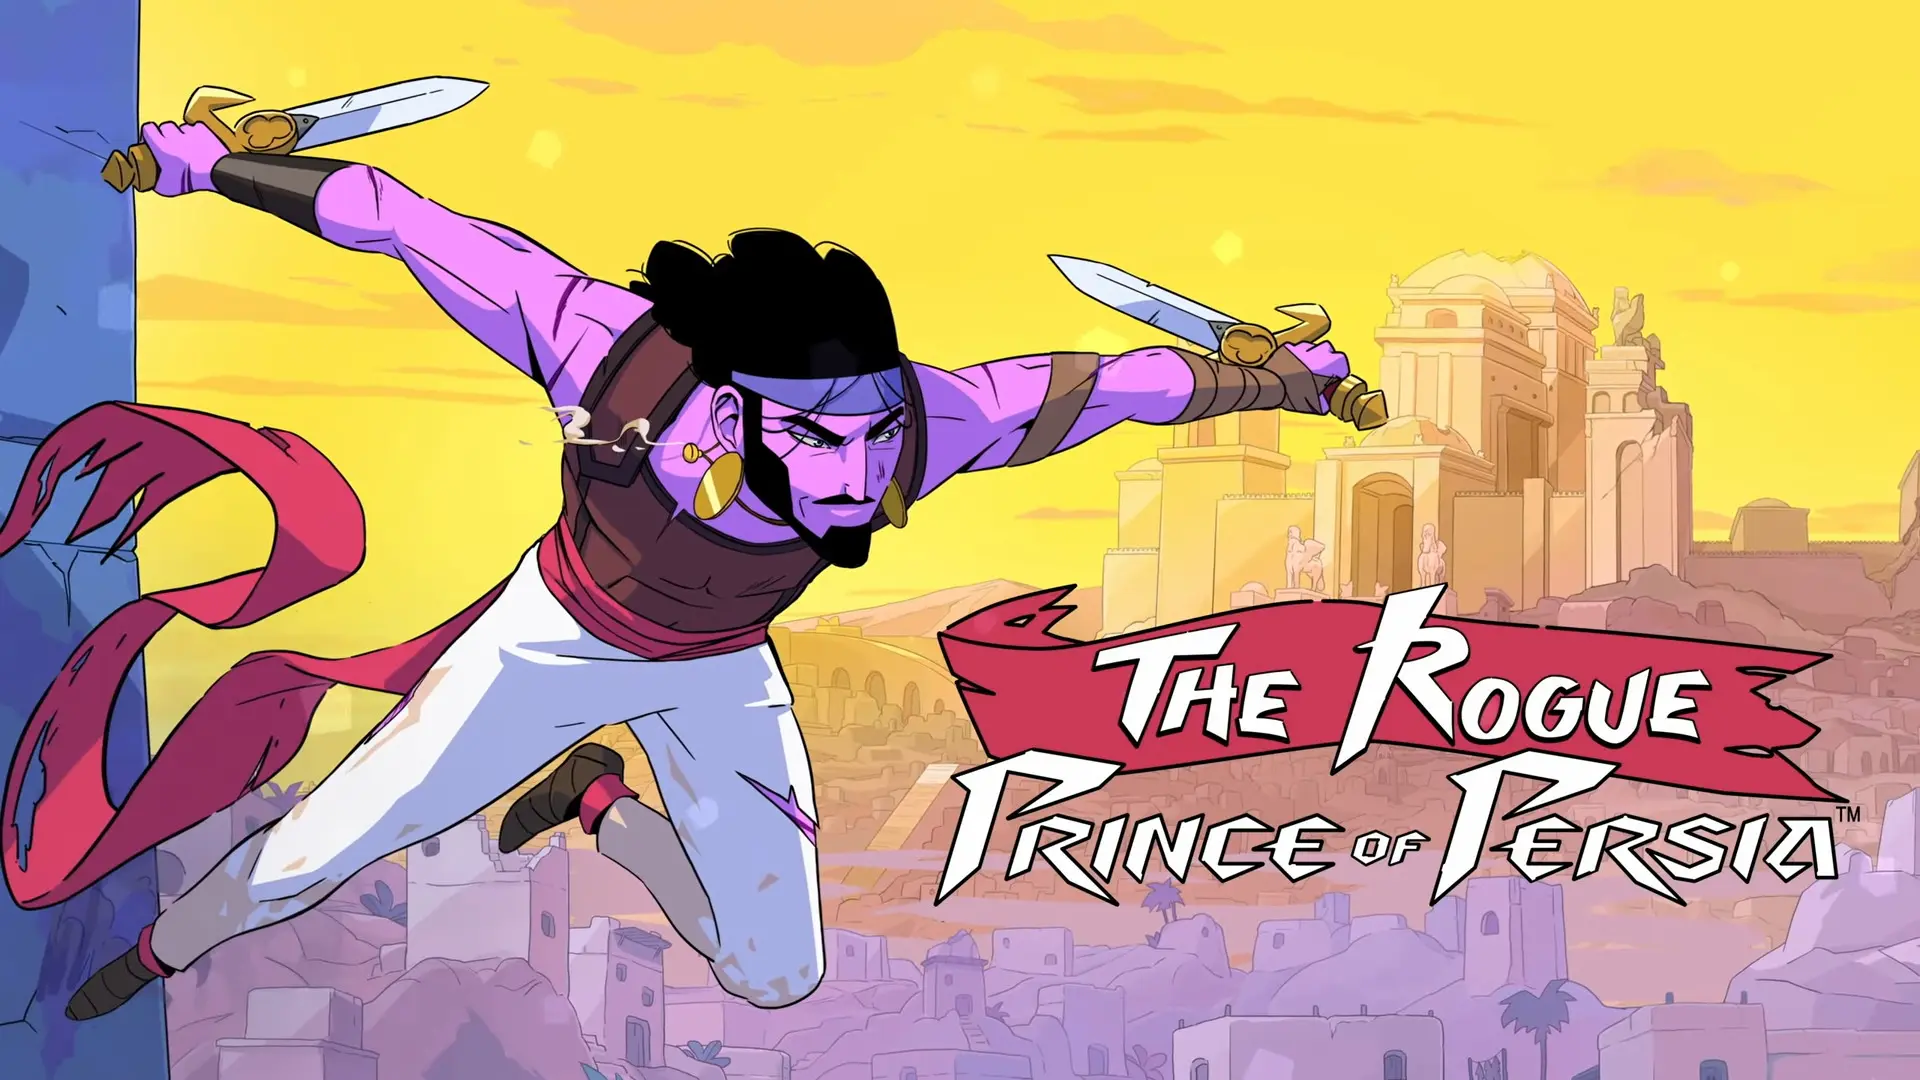 تریلر جدید فیلم The Rogue Prince of Persia با تمرکز بر داستان و سفر در زمان منتشر شد